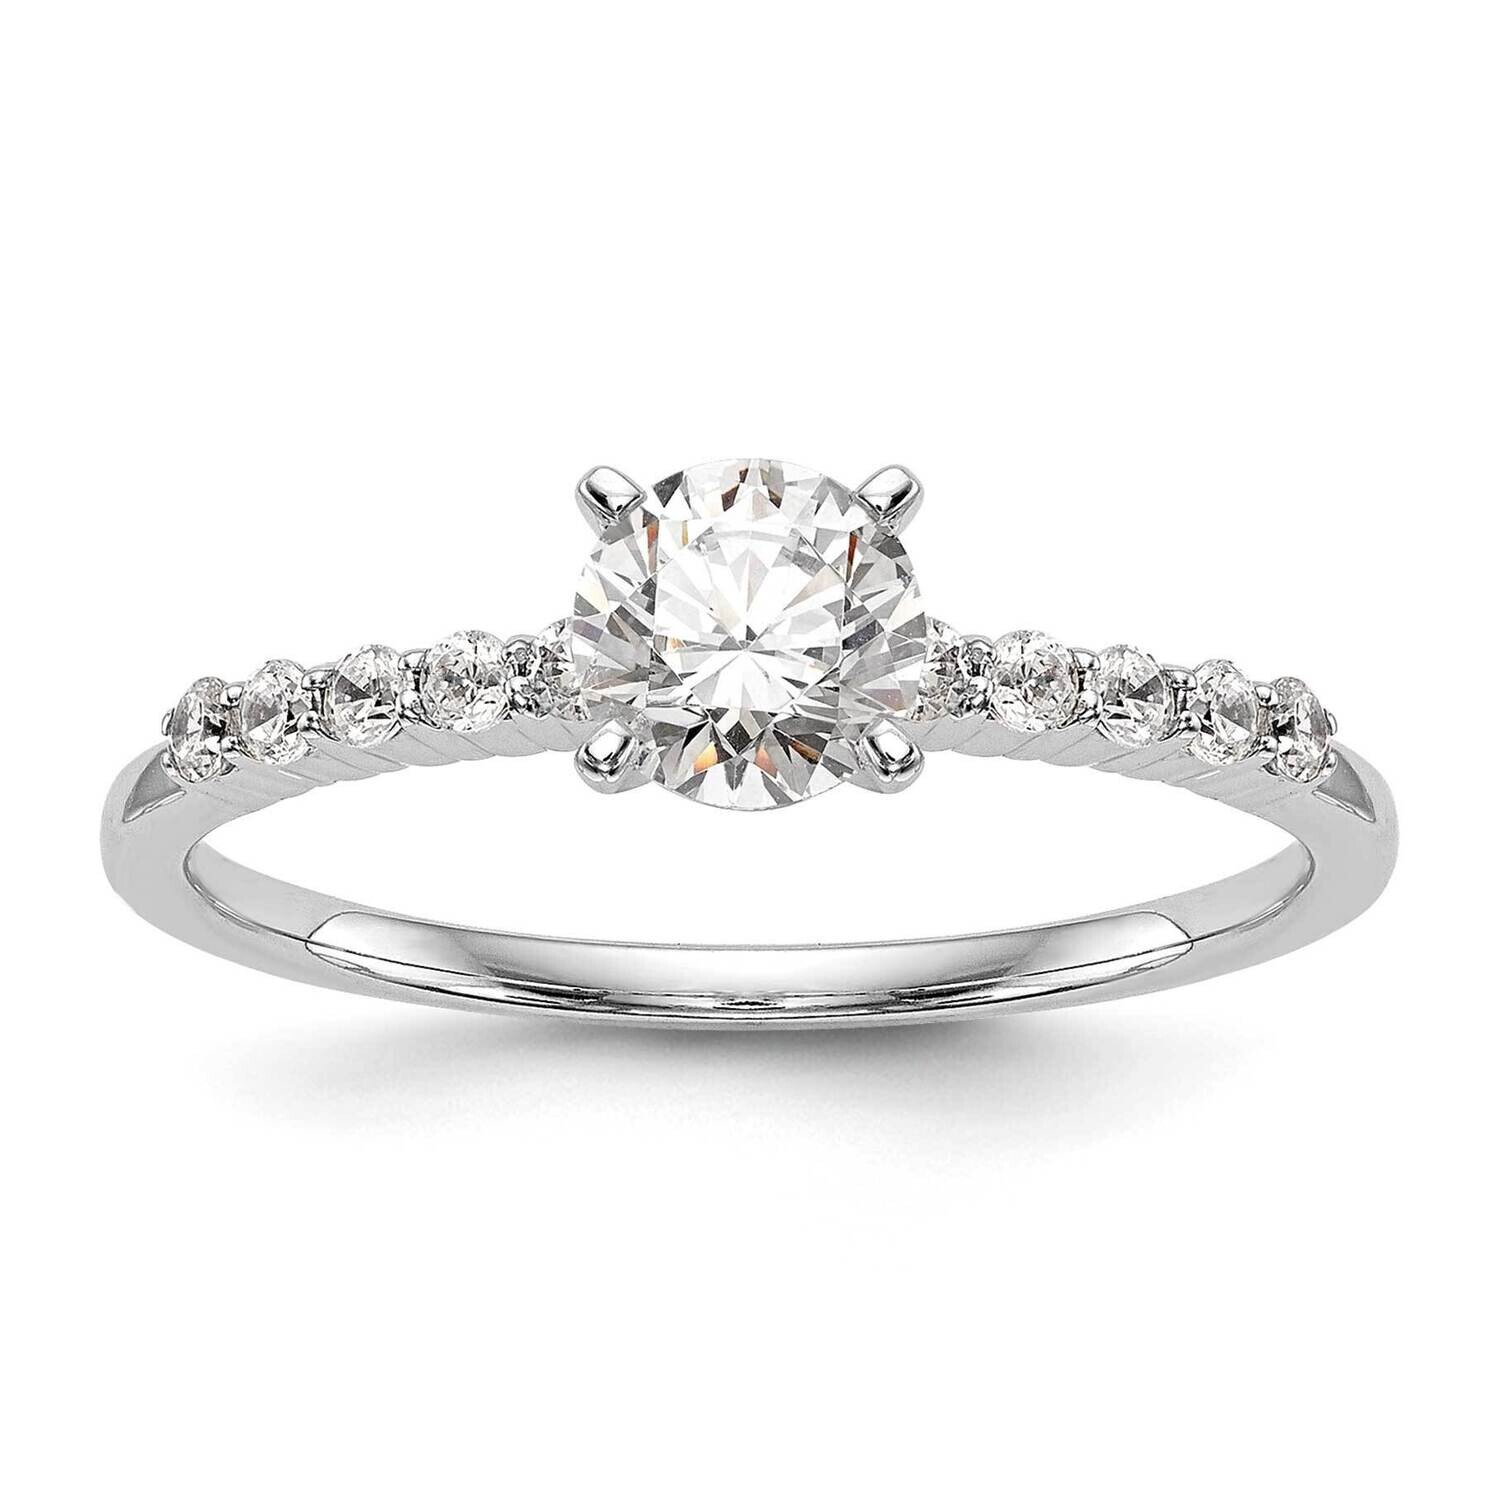 Peg Set 1/4 Carat Diamond Semi-Mount Engagement Ring 14k White Gold RM2938E-024-WAA